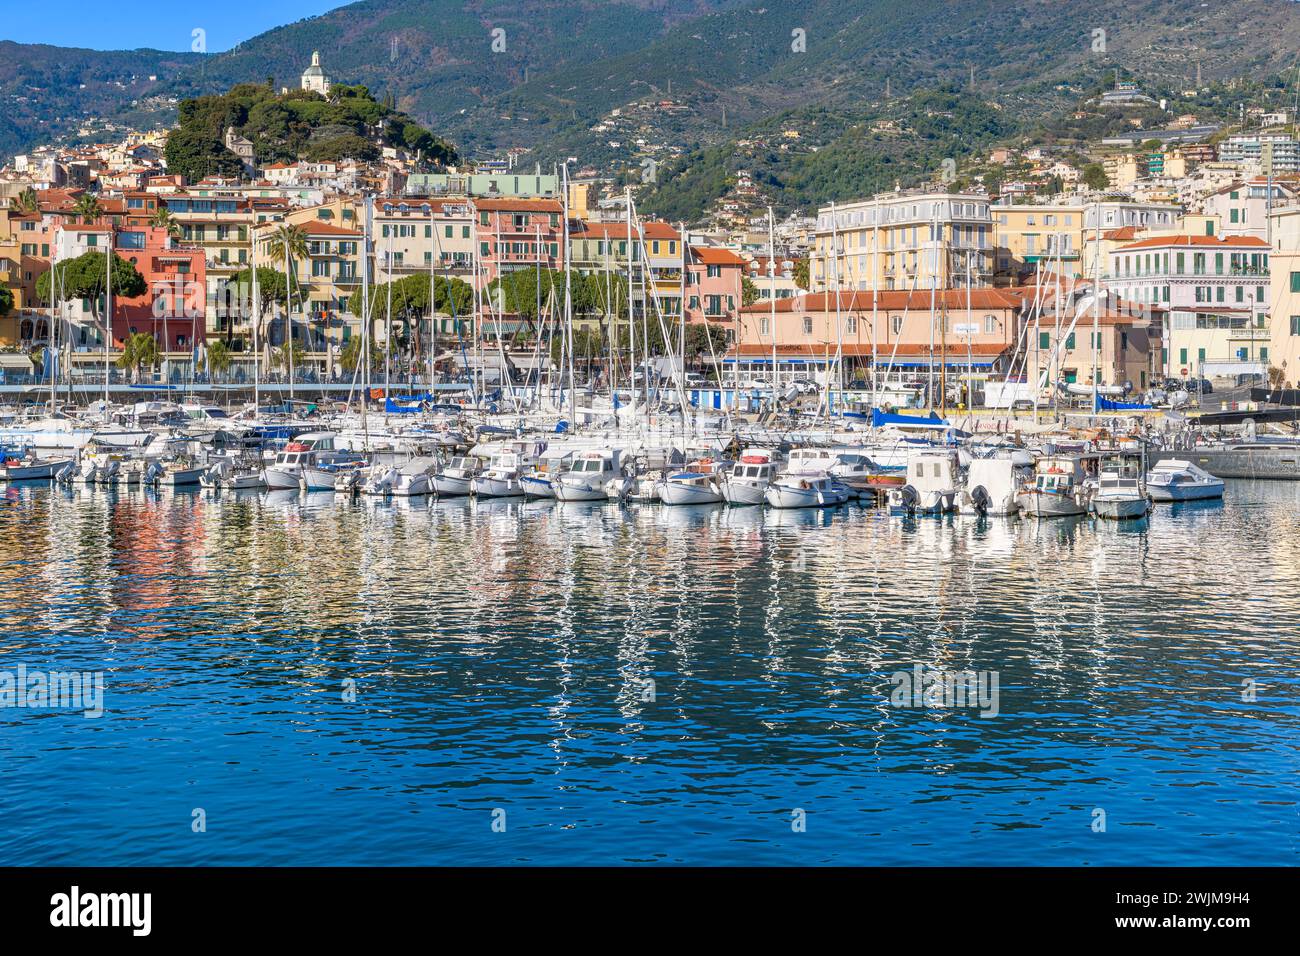 Sanremo Stadt an der italienischen Riviera - Riviera Ligure, mit dem wunderschönen Yachthafen im Vordergrund. Schuss vom Hafenarm, genannt Molo Sud. Stockfoto